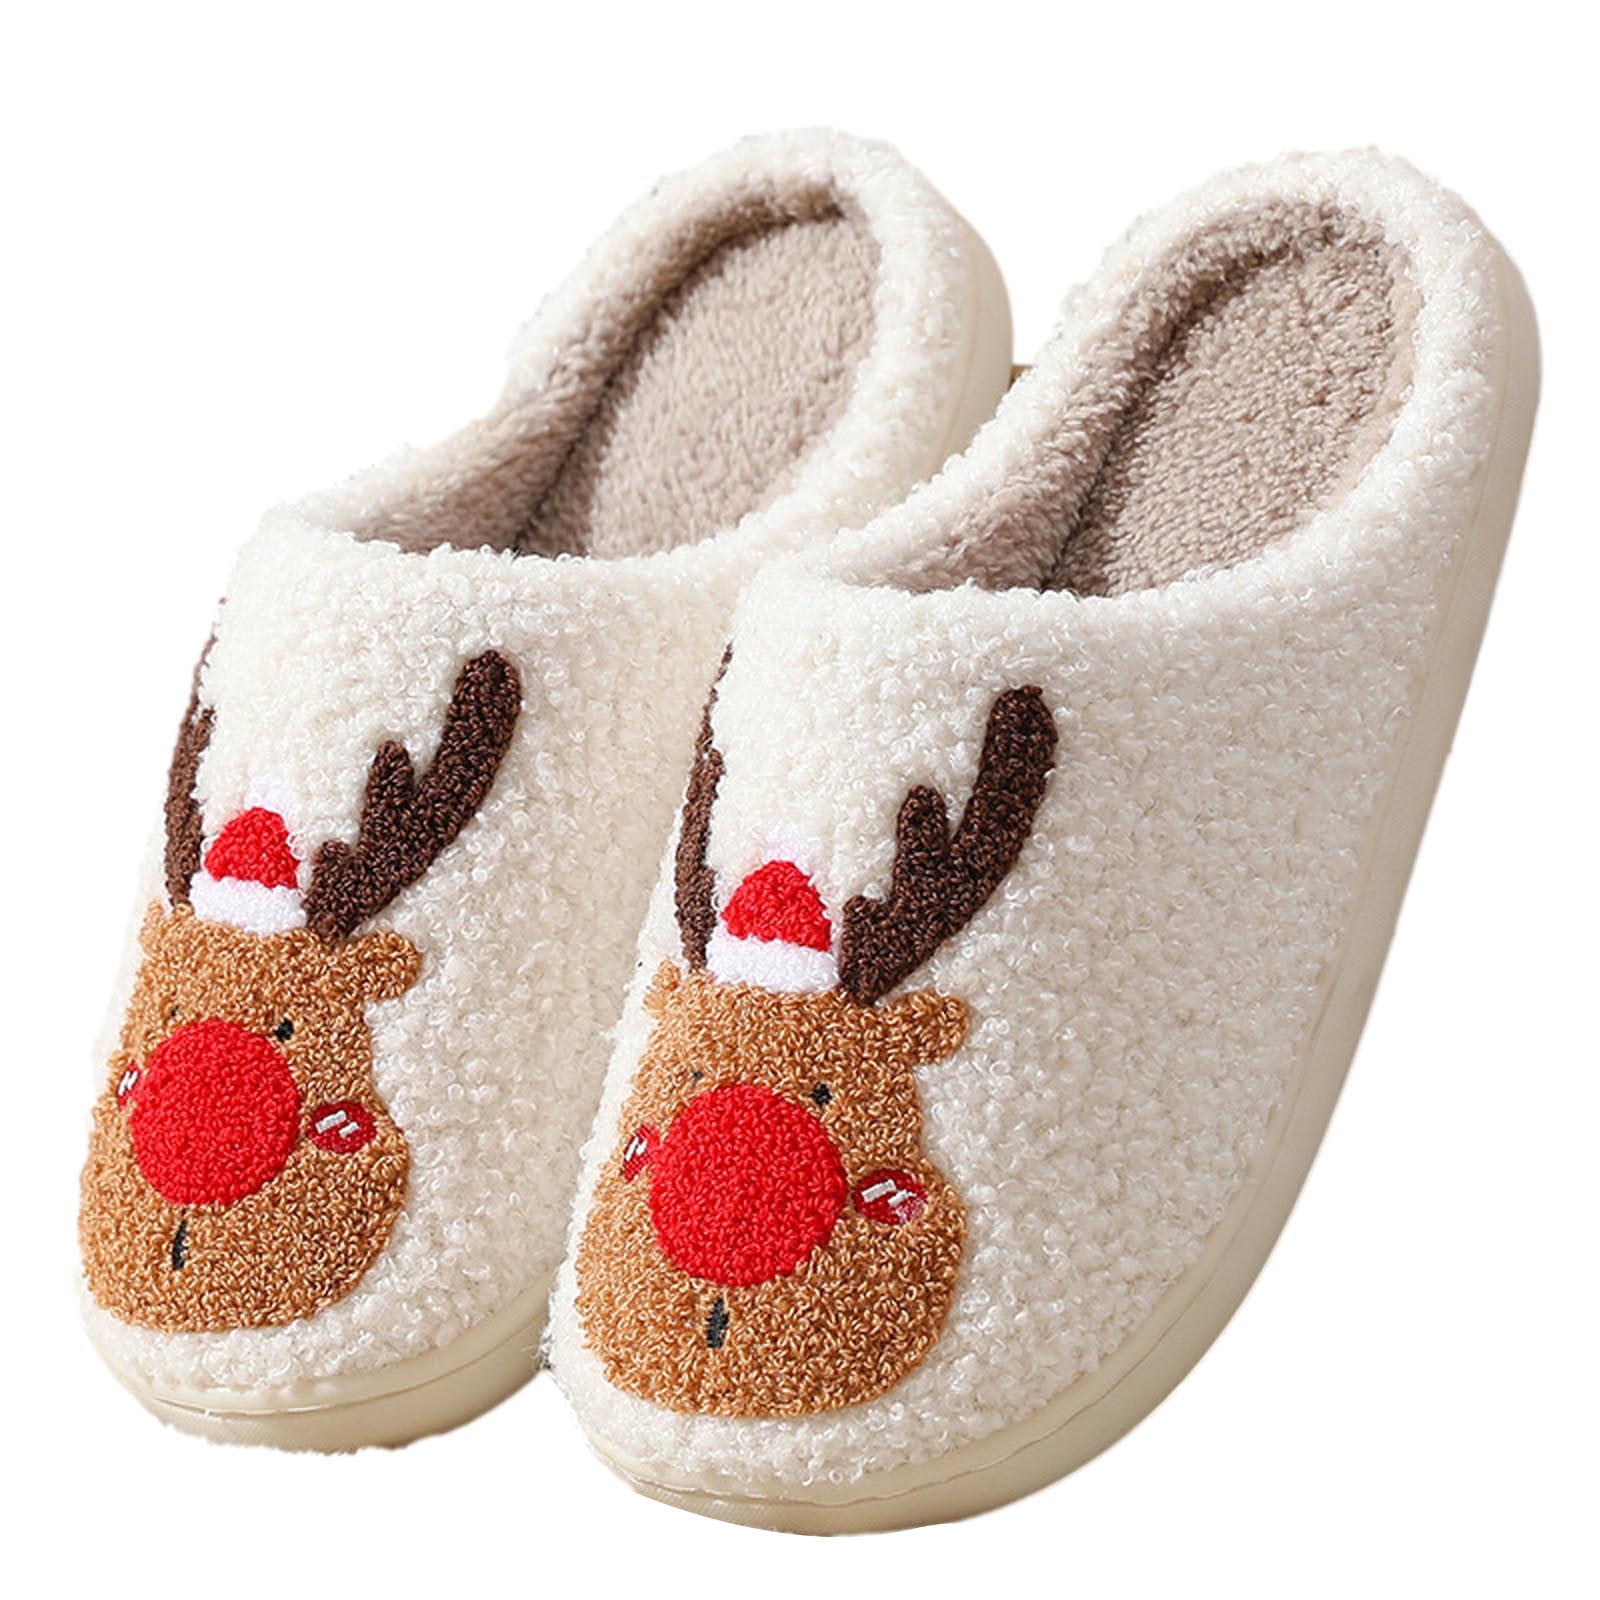 Jikolililili Christmas Elk House Slippers for Women and Men Slippers ...